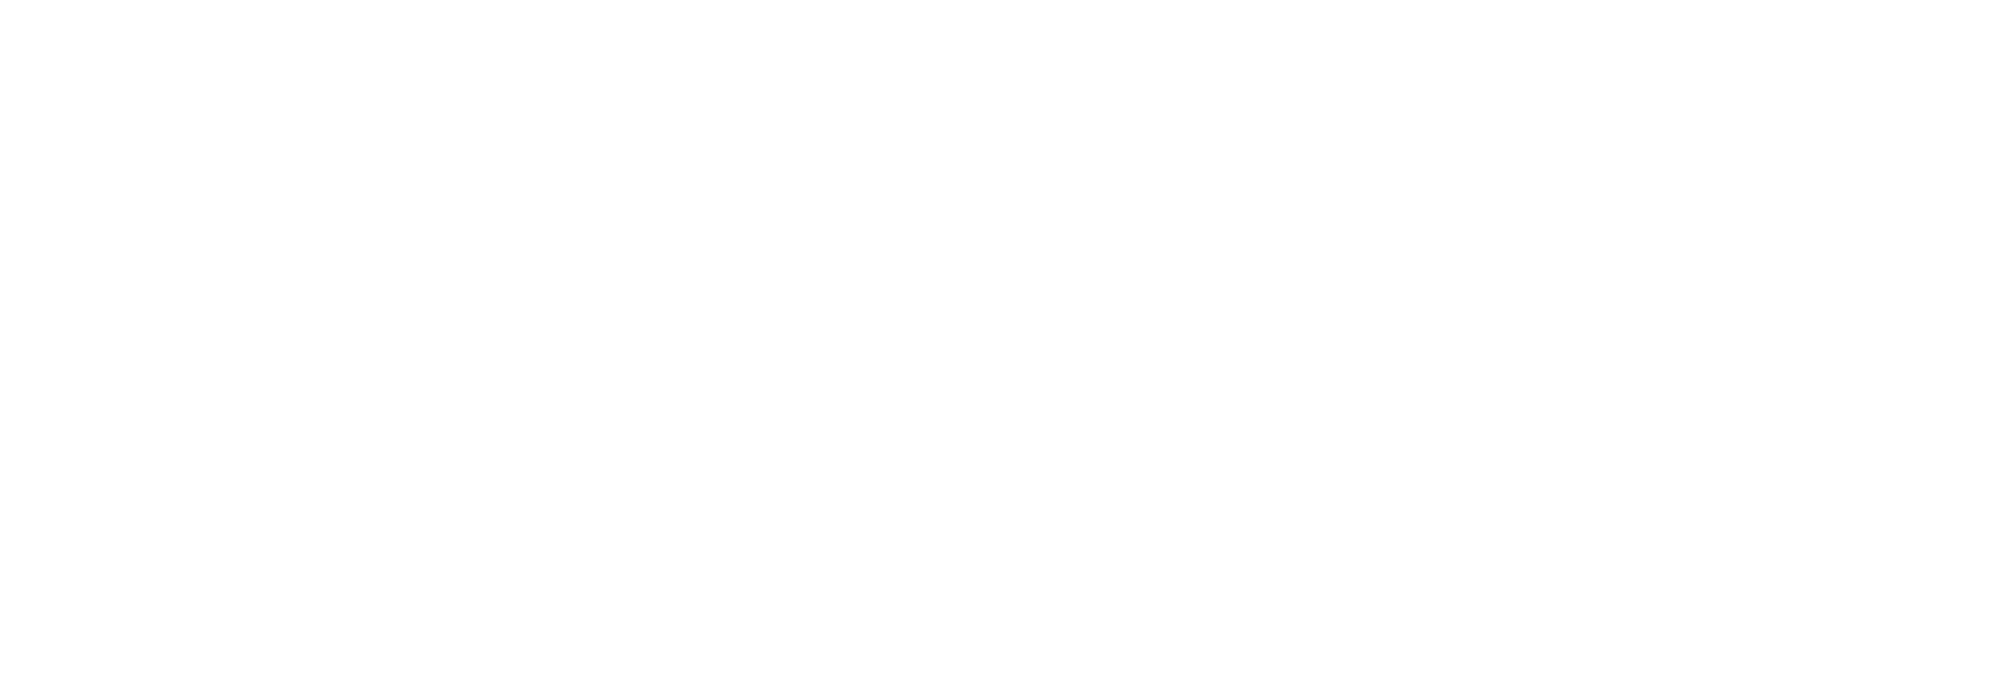 iris galerie weißes logo mit tagline